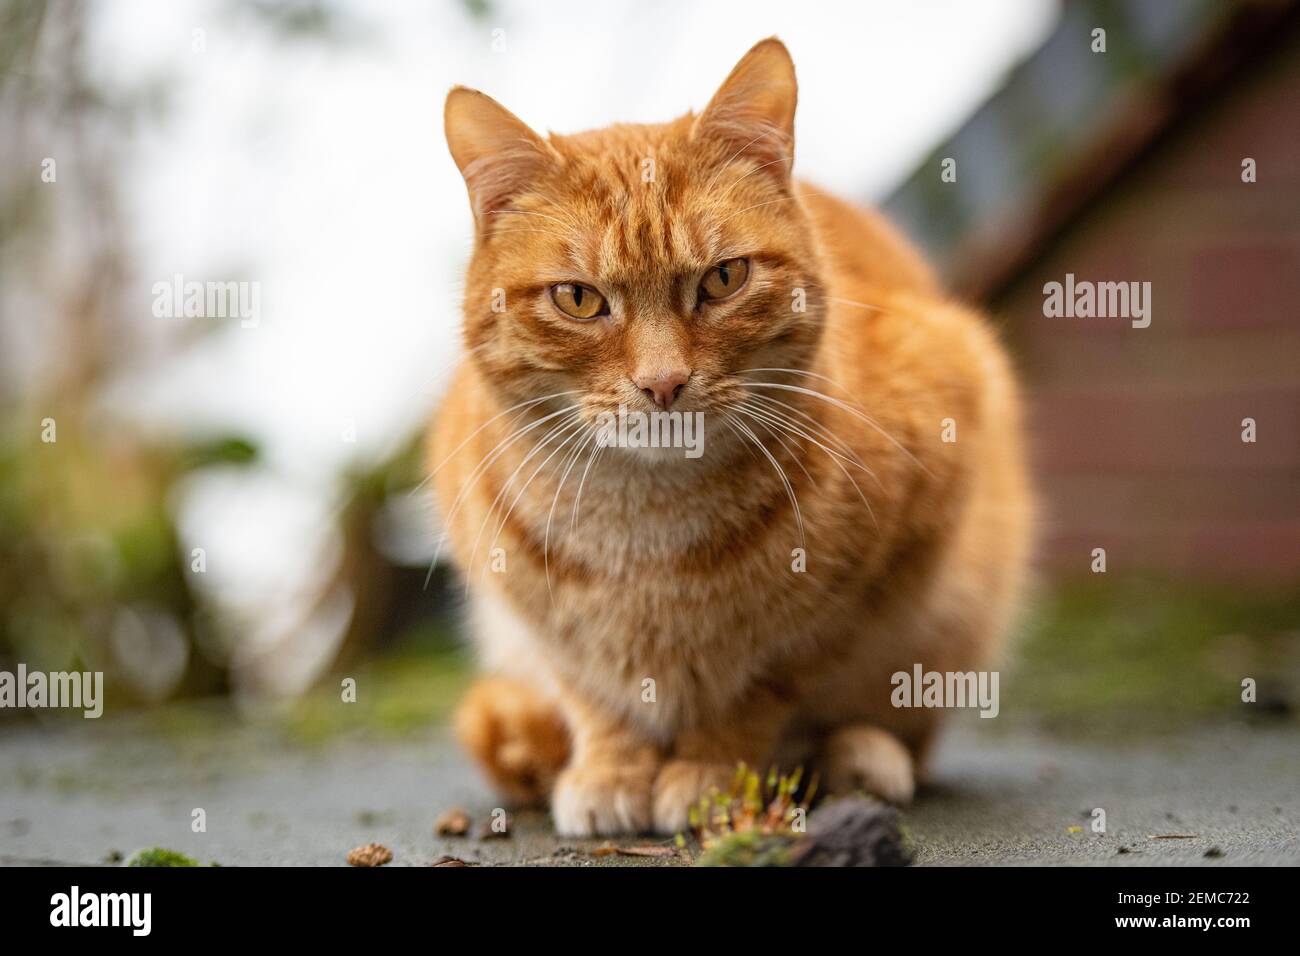 ginger tabby cat Stock Photo